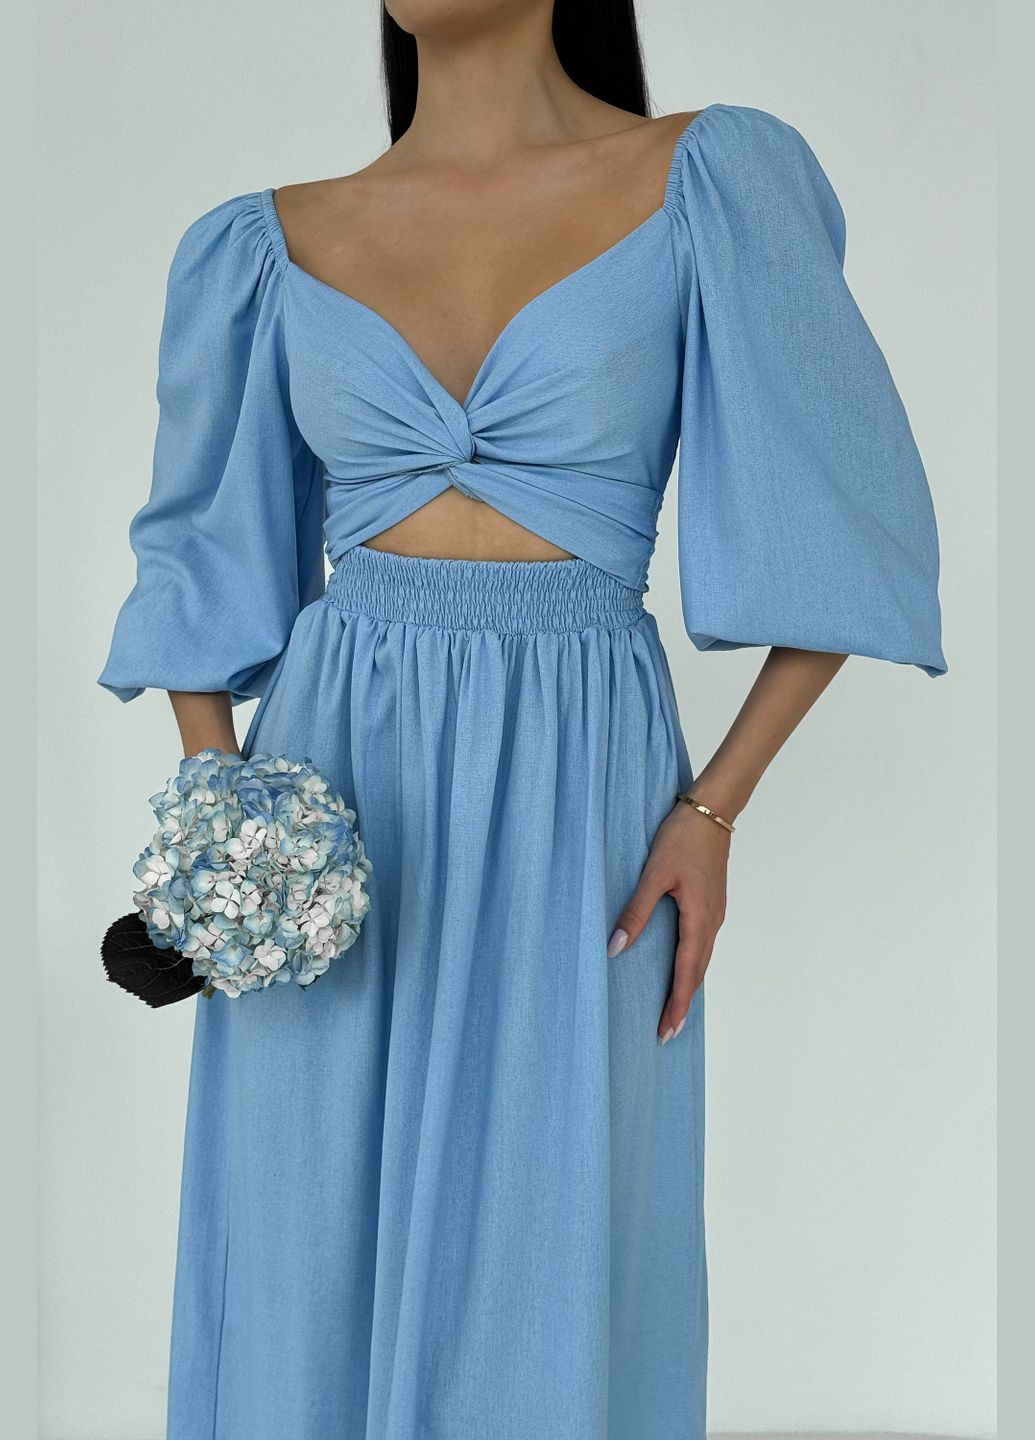 Голубое праздничный, вечернее дизайнерское платье из льна голубого цвета платье-трансформер Jadone Fashion однотонное